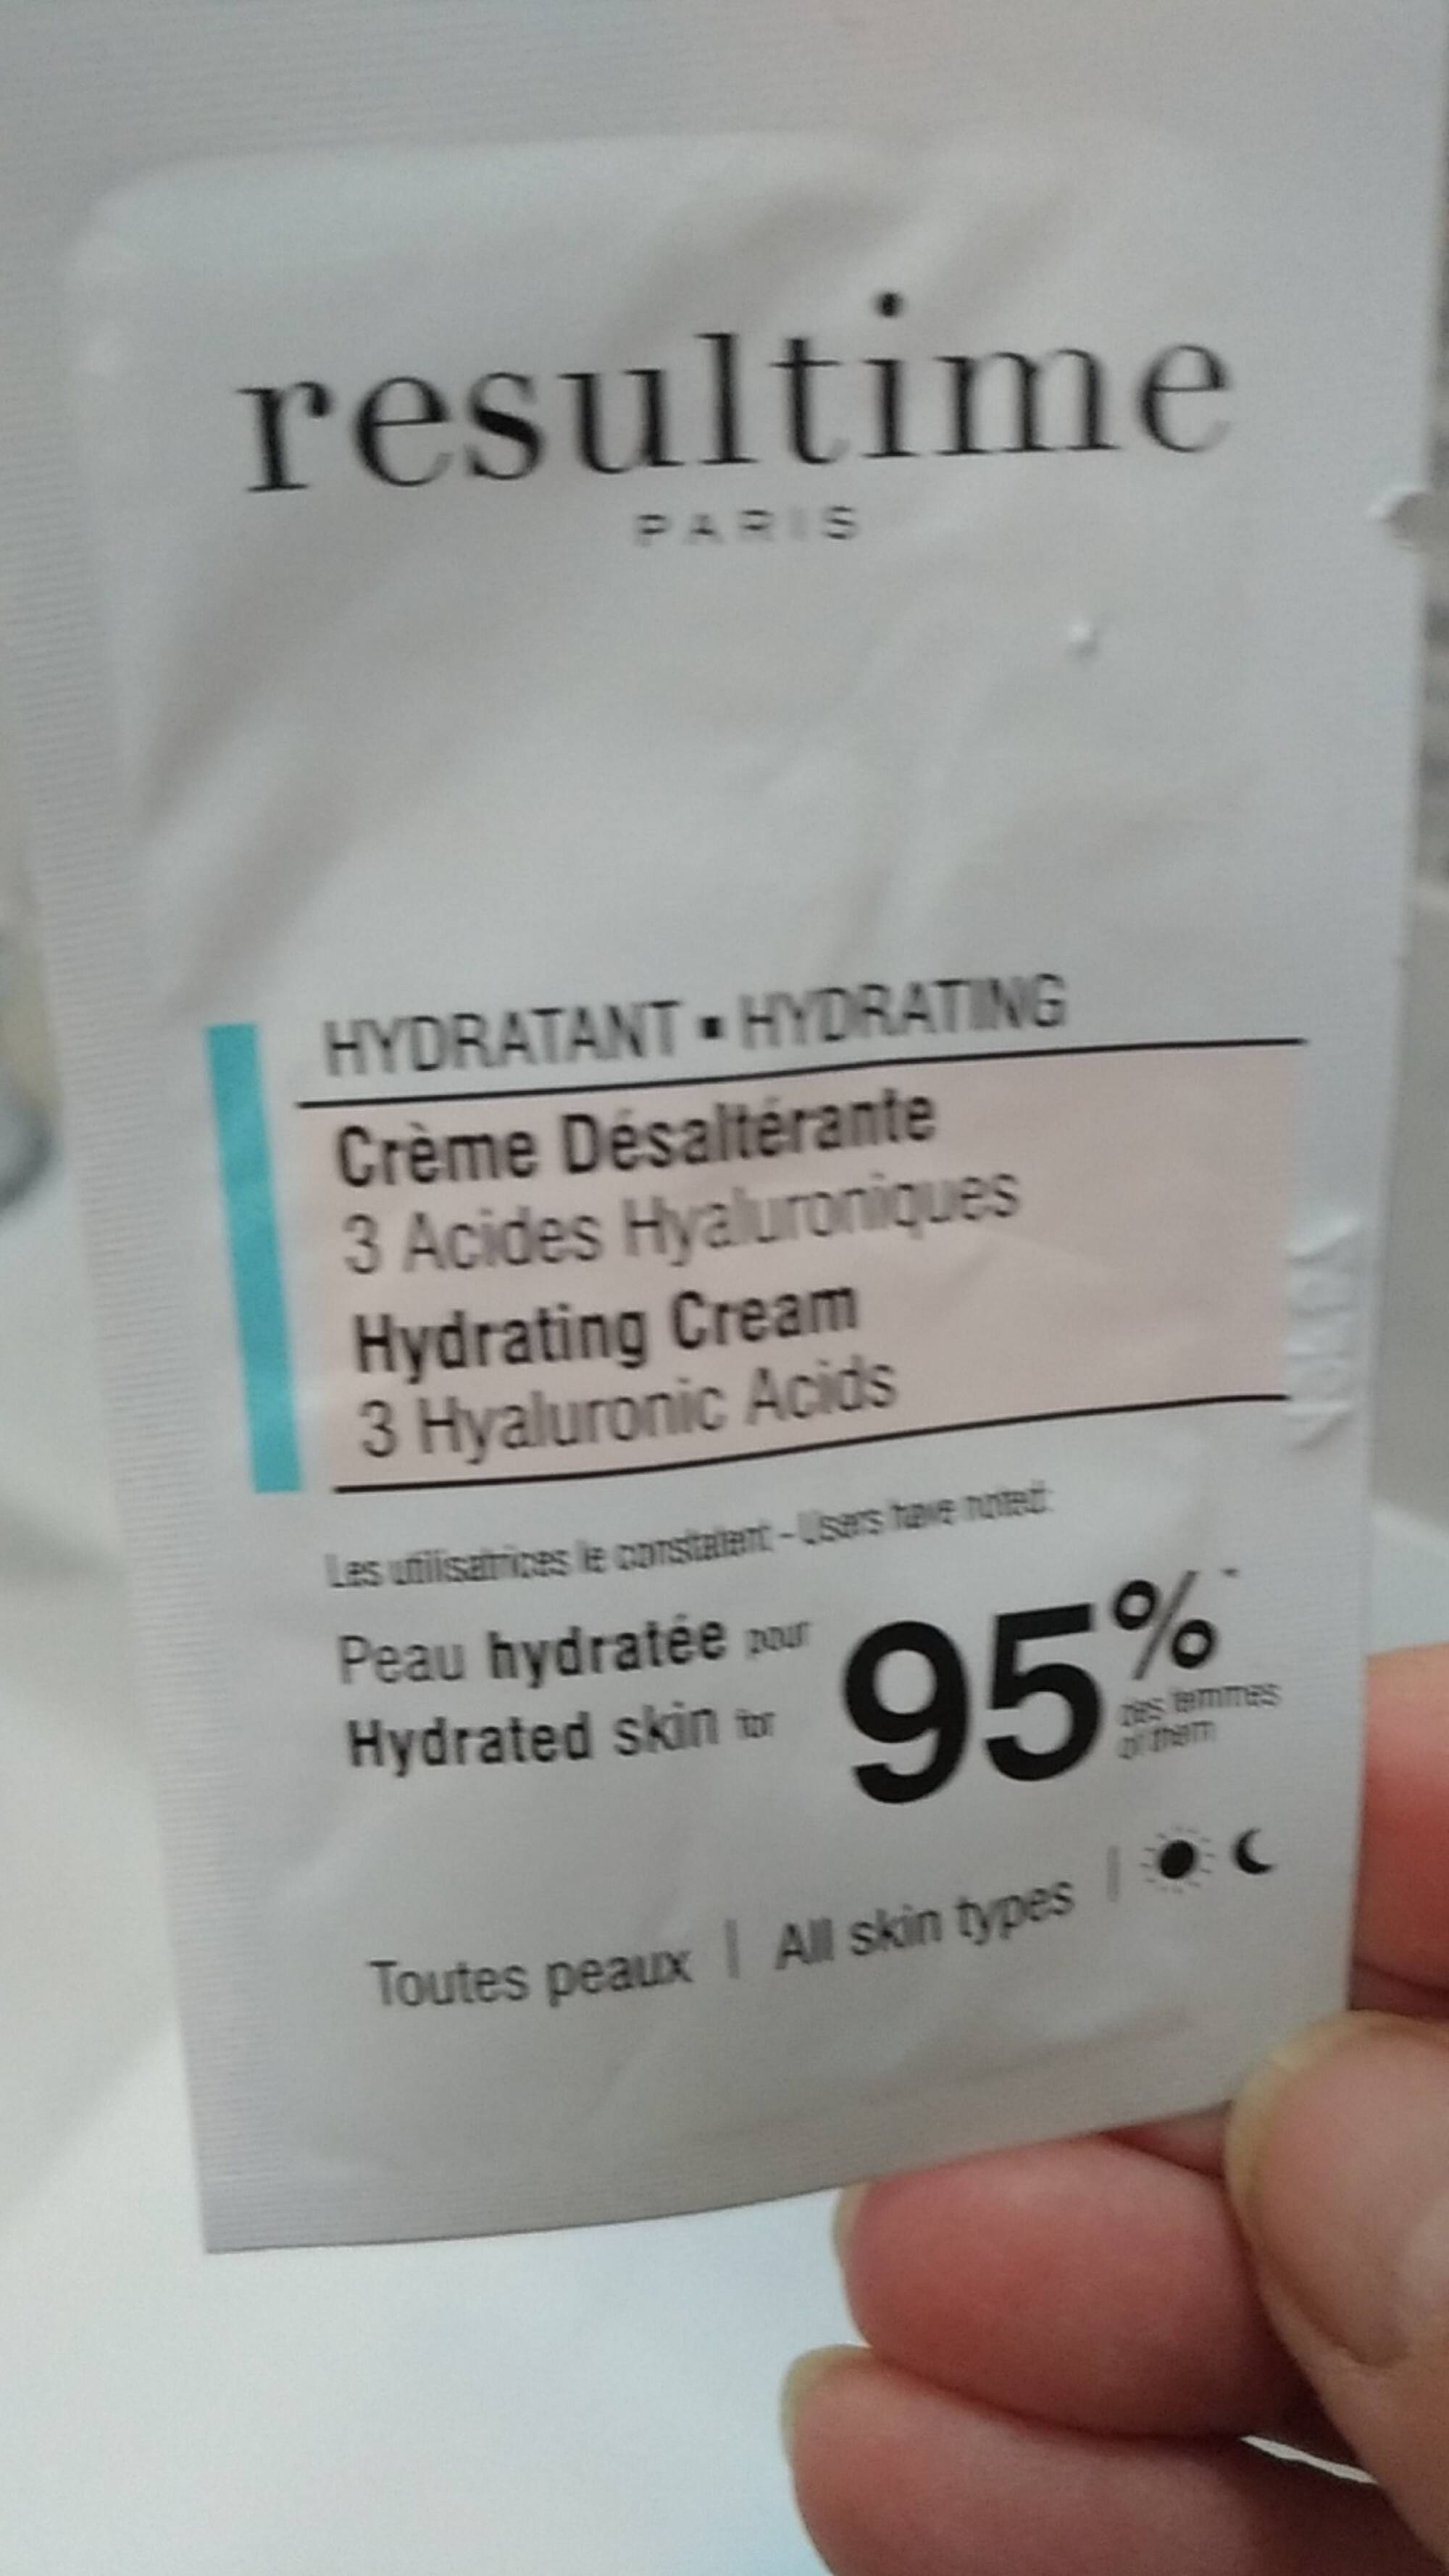 RESULTIME - Hydratant - Crème désaltérante 3 acides hyaluroniques